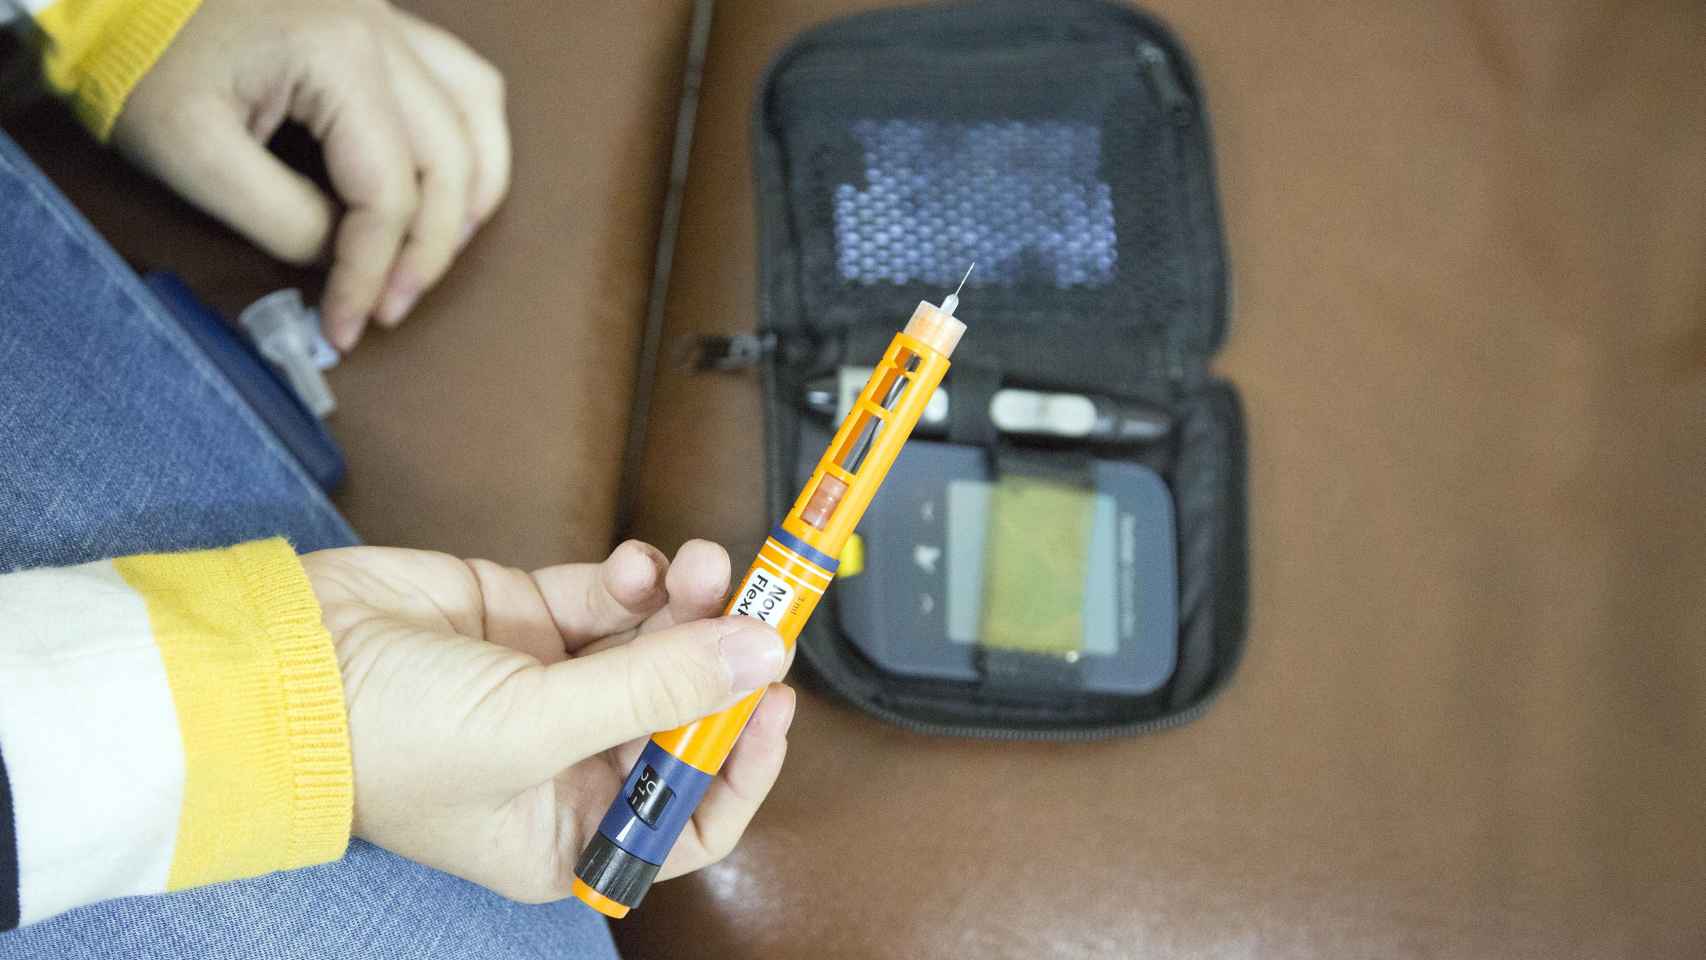 Las inyecciones de insulina y el glucómetro acompañan al diabético en su día a día